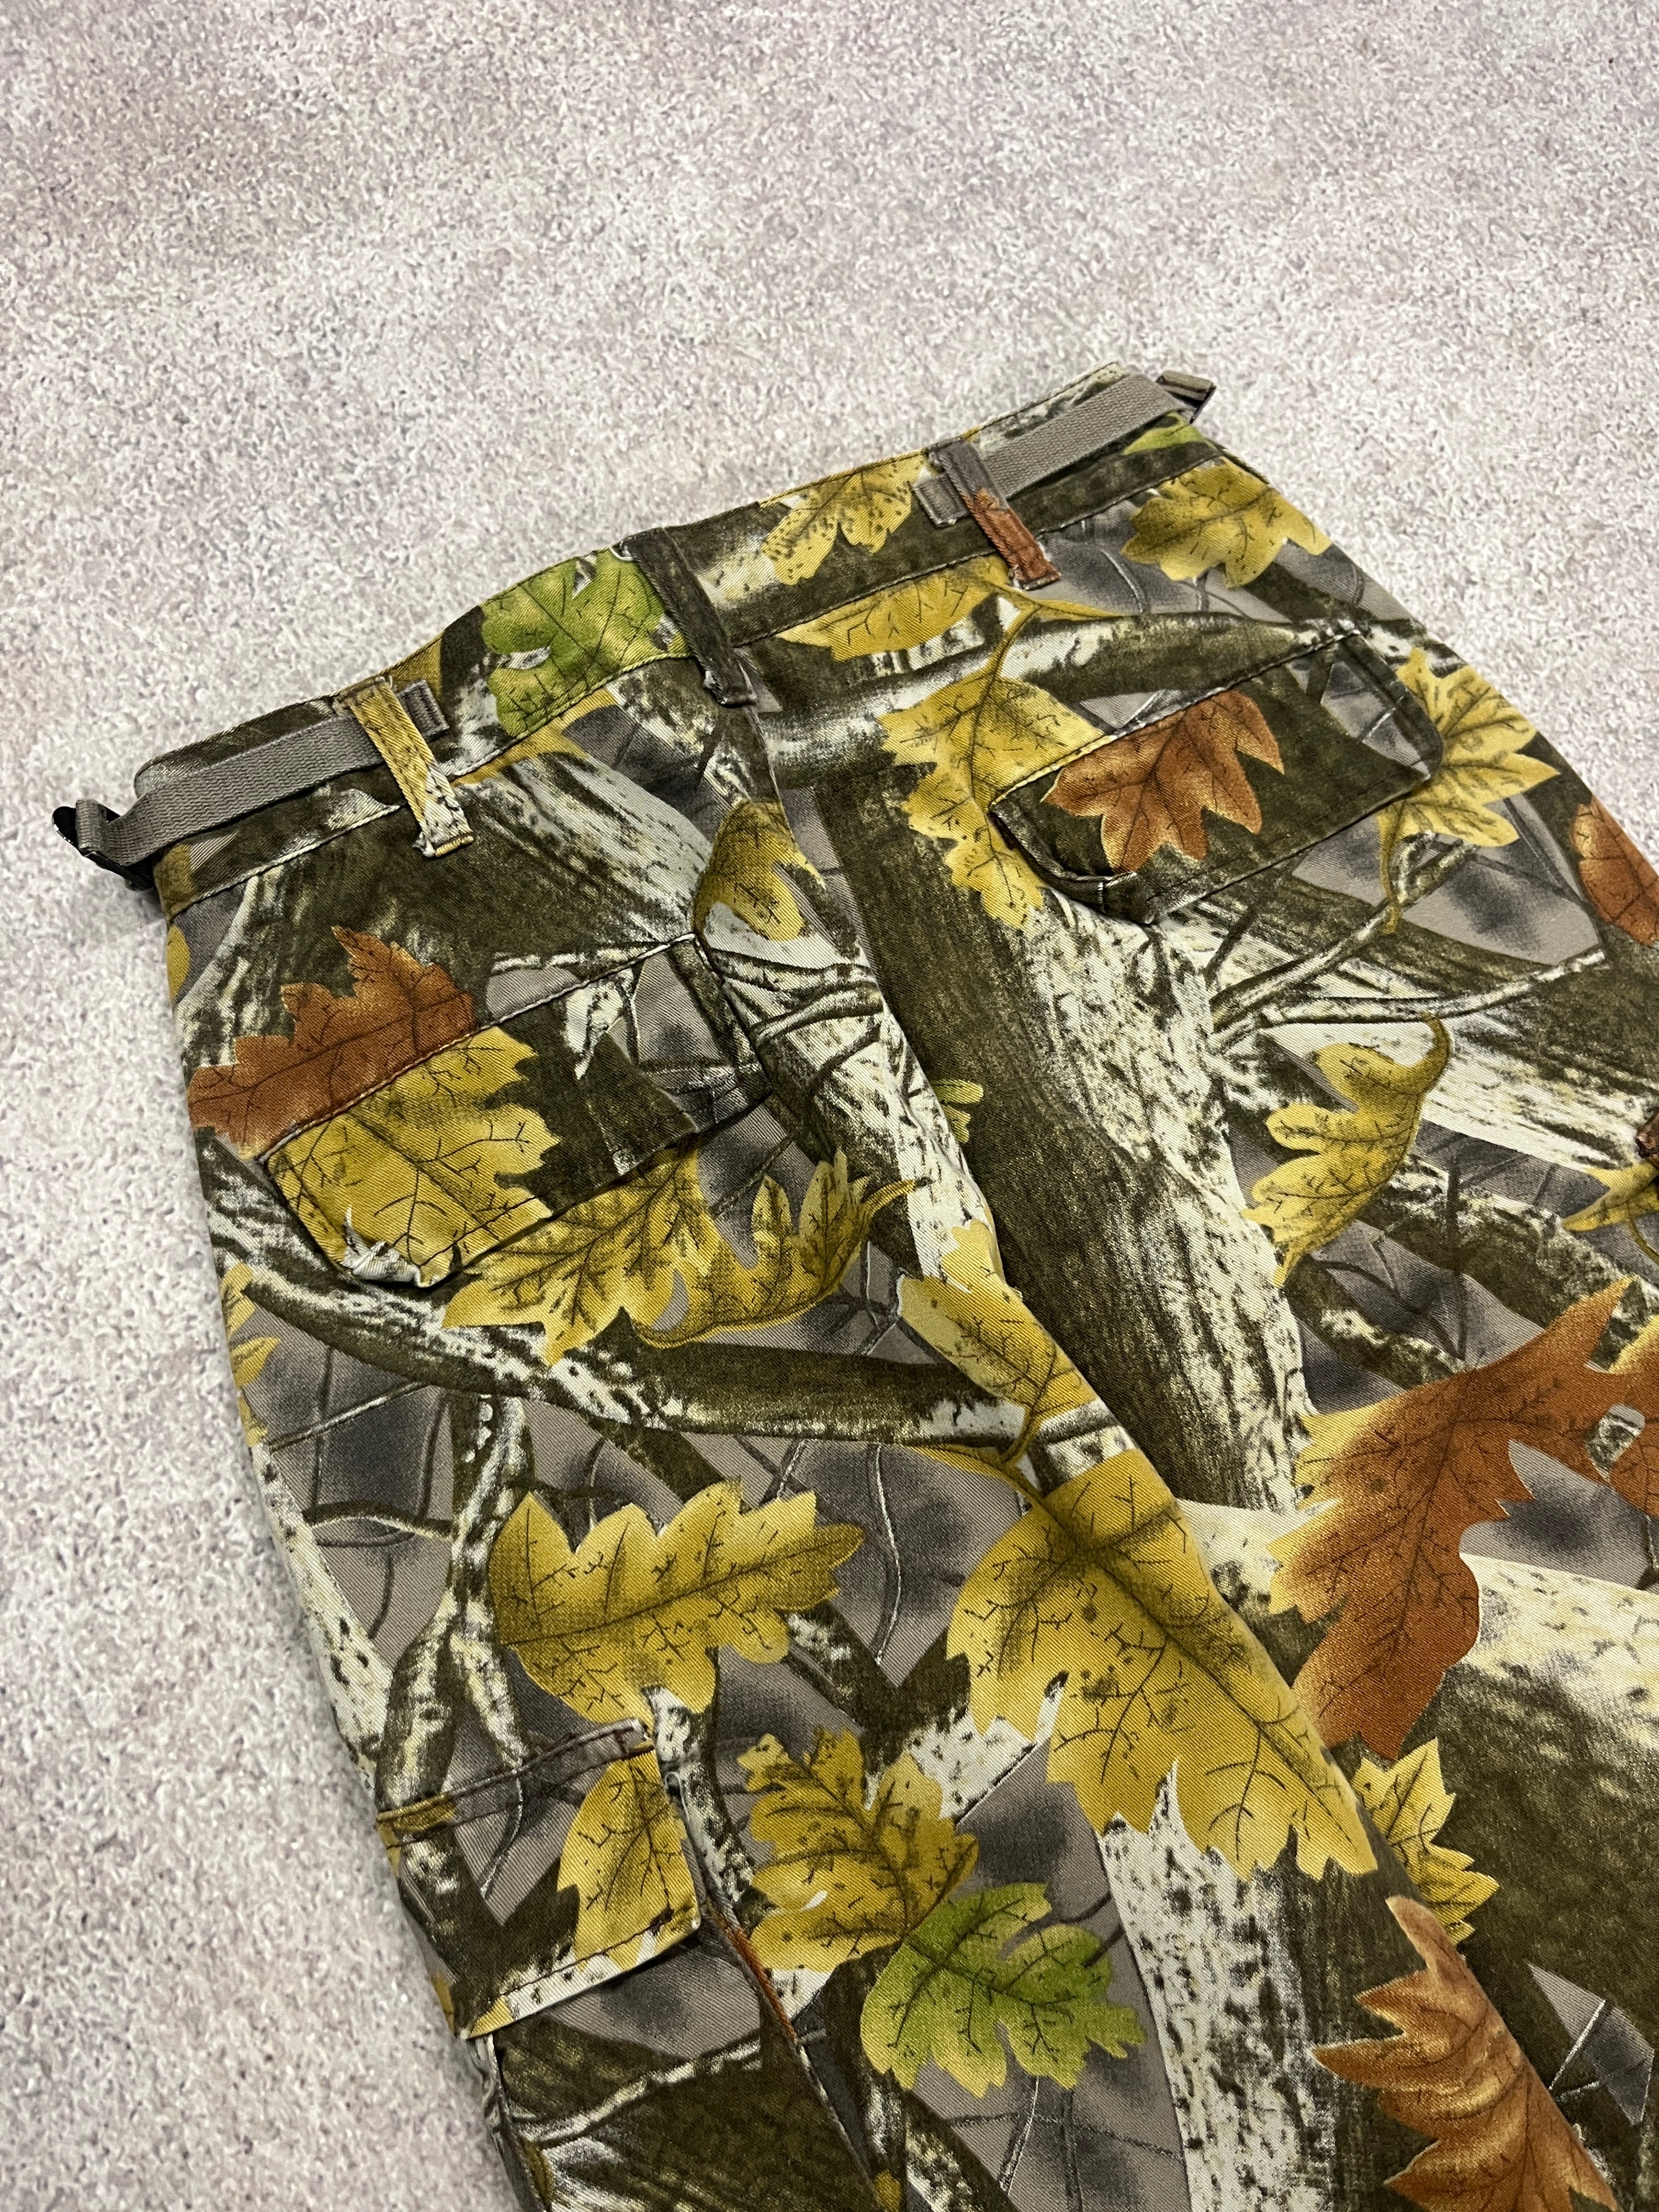 Vintage Forest Pants Camo  // W28 L28 - RHAGHOUSE VINTAGE